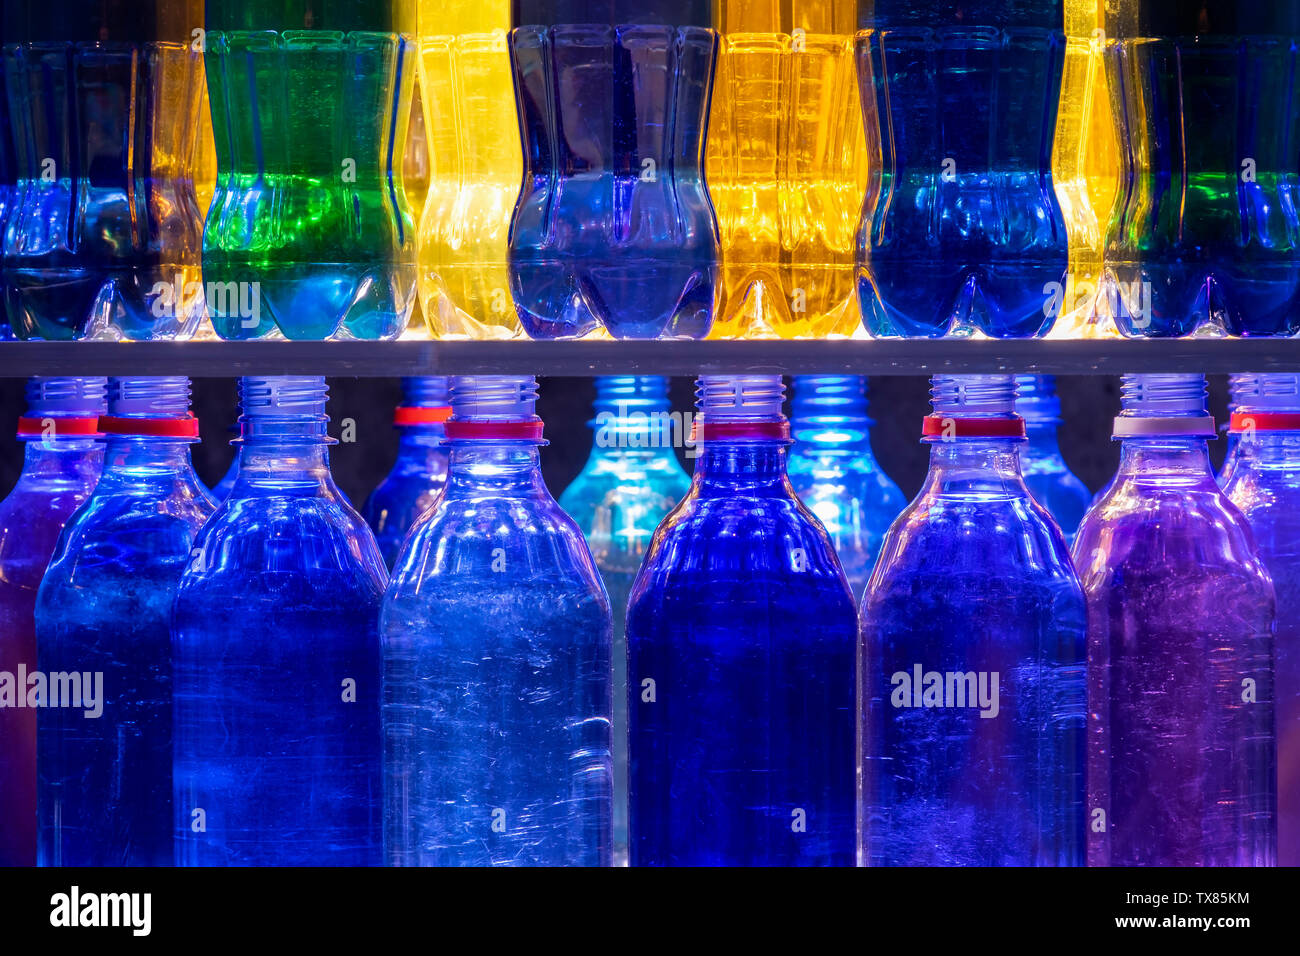 Les bouteilles en plastique colorés empilés sur des étagères Banque D'Images